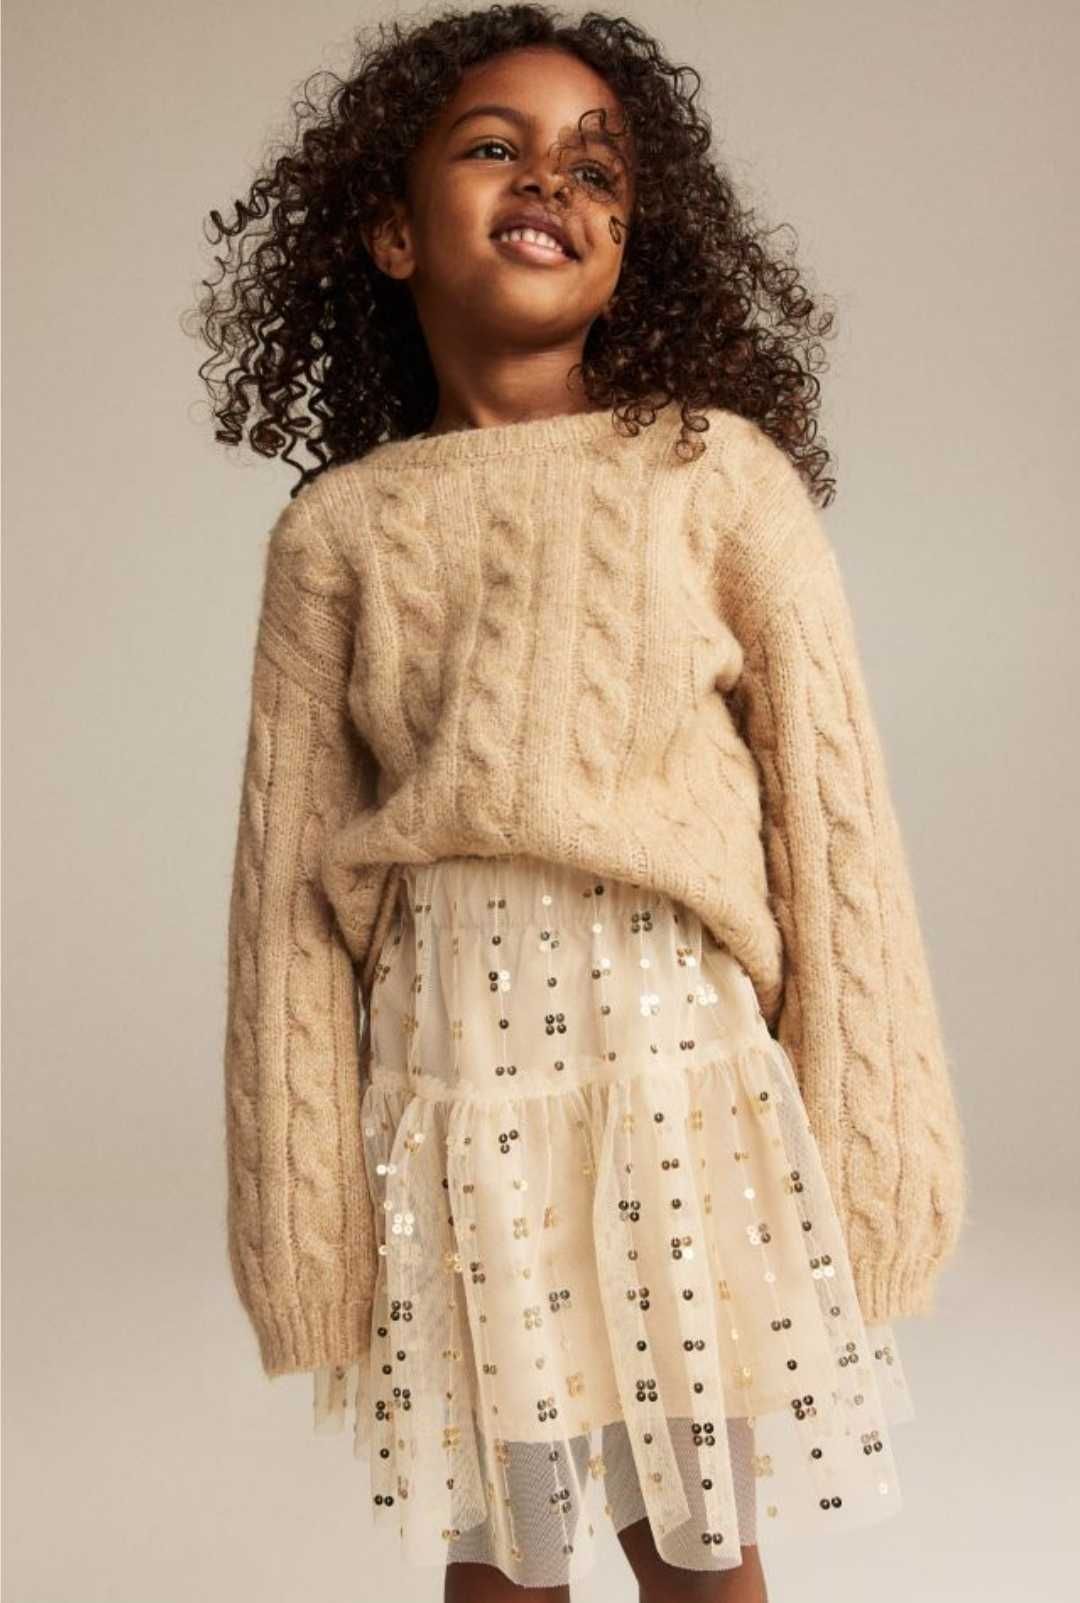 Детска пола НМ с пайети 104 и детски памучен пуловер Sinsay 98см, нови